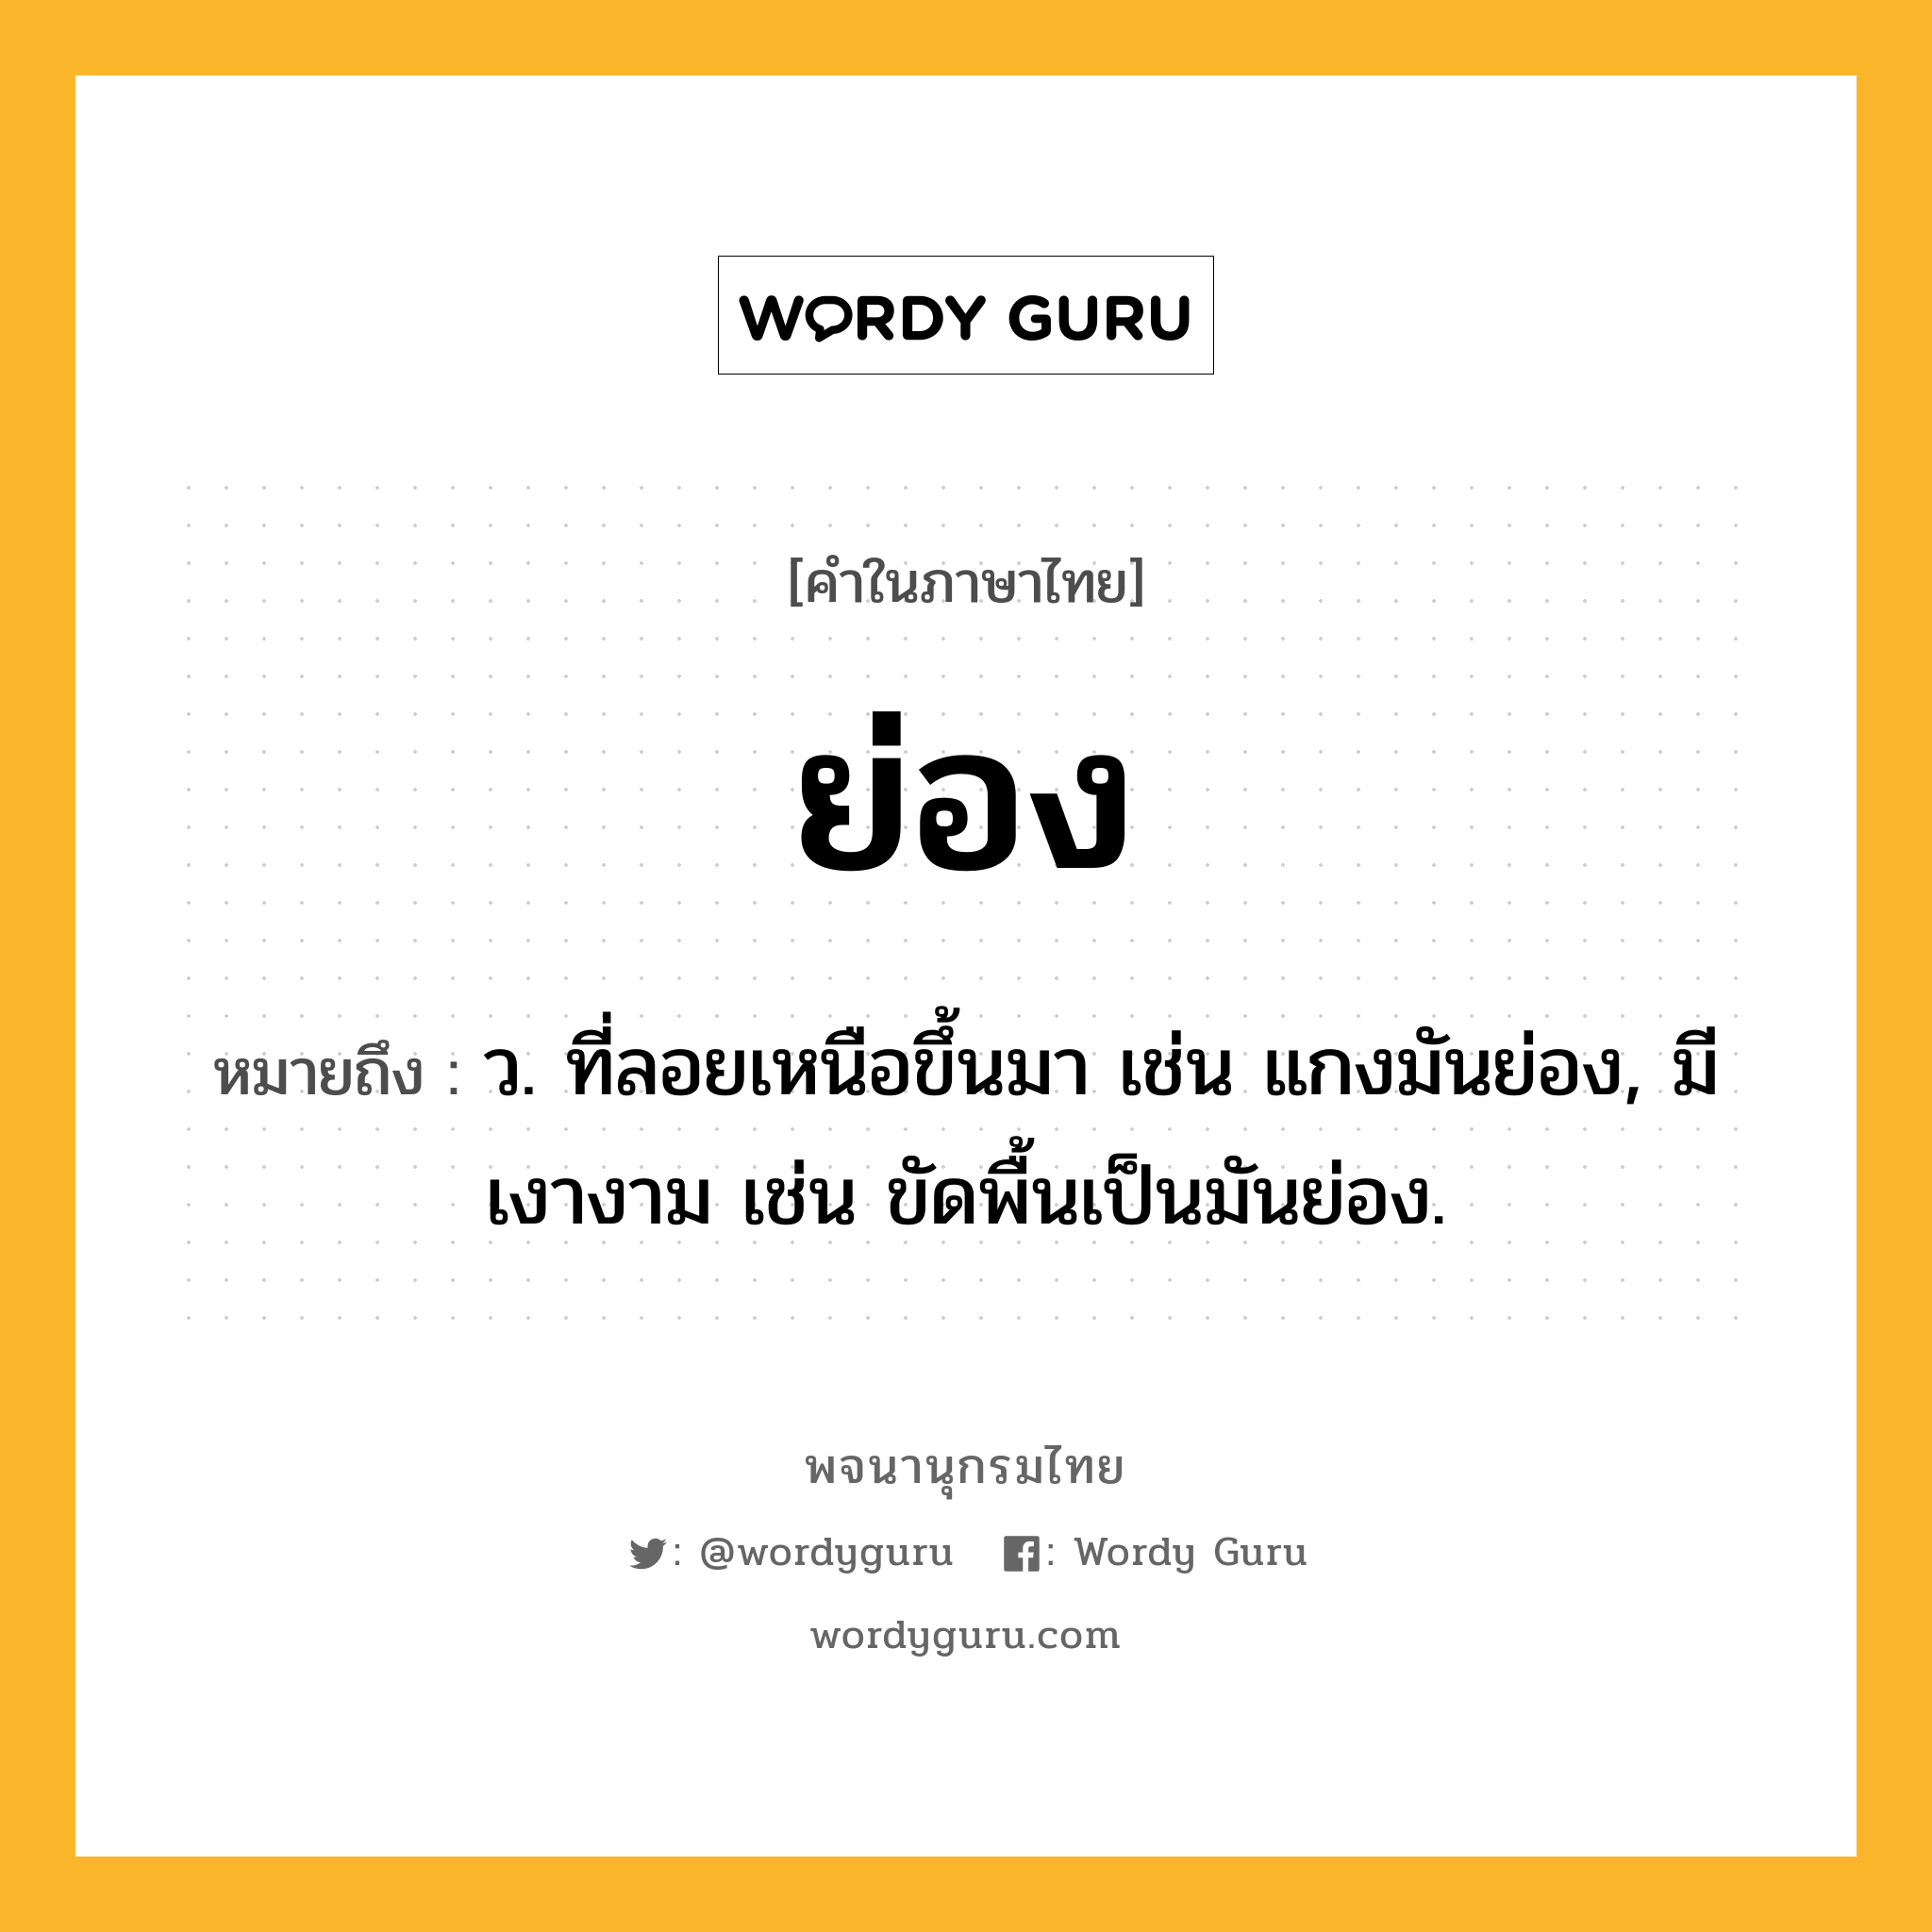 ย่อง ความหมาย หมายถึงอะไร?, คำในภาษาไทย ย่อง หมายถึง ว. ที่ลอยเหนือขึ้นมา เช่น แกงมันย่อง, มีเงางาม เช่น ขัดพื้นเป็นมันย่อง.